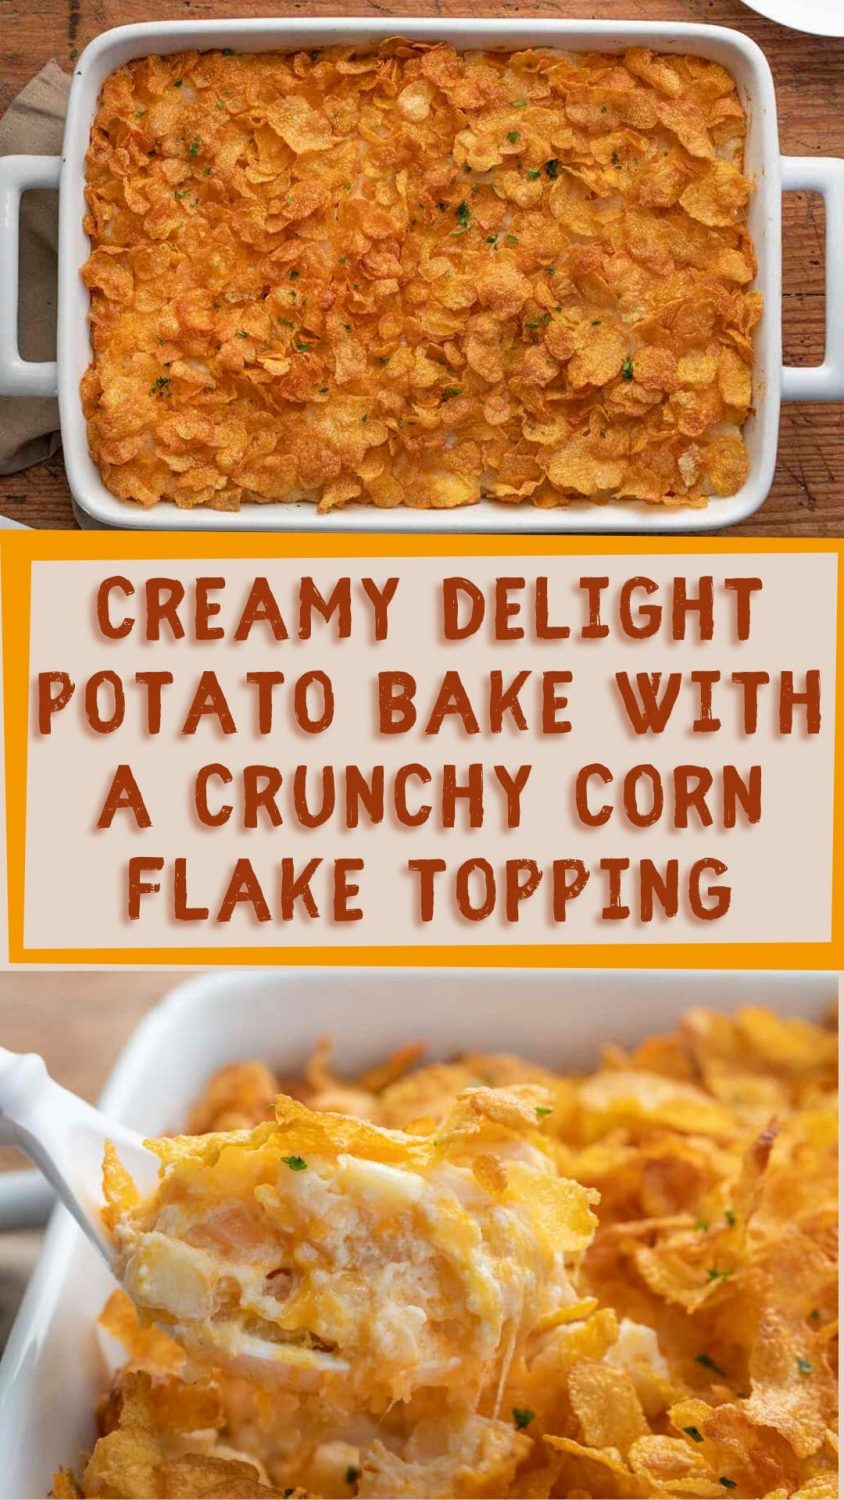 Creamy Delight Potato Bake with a Crunchy Corn Flake Topping